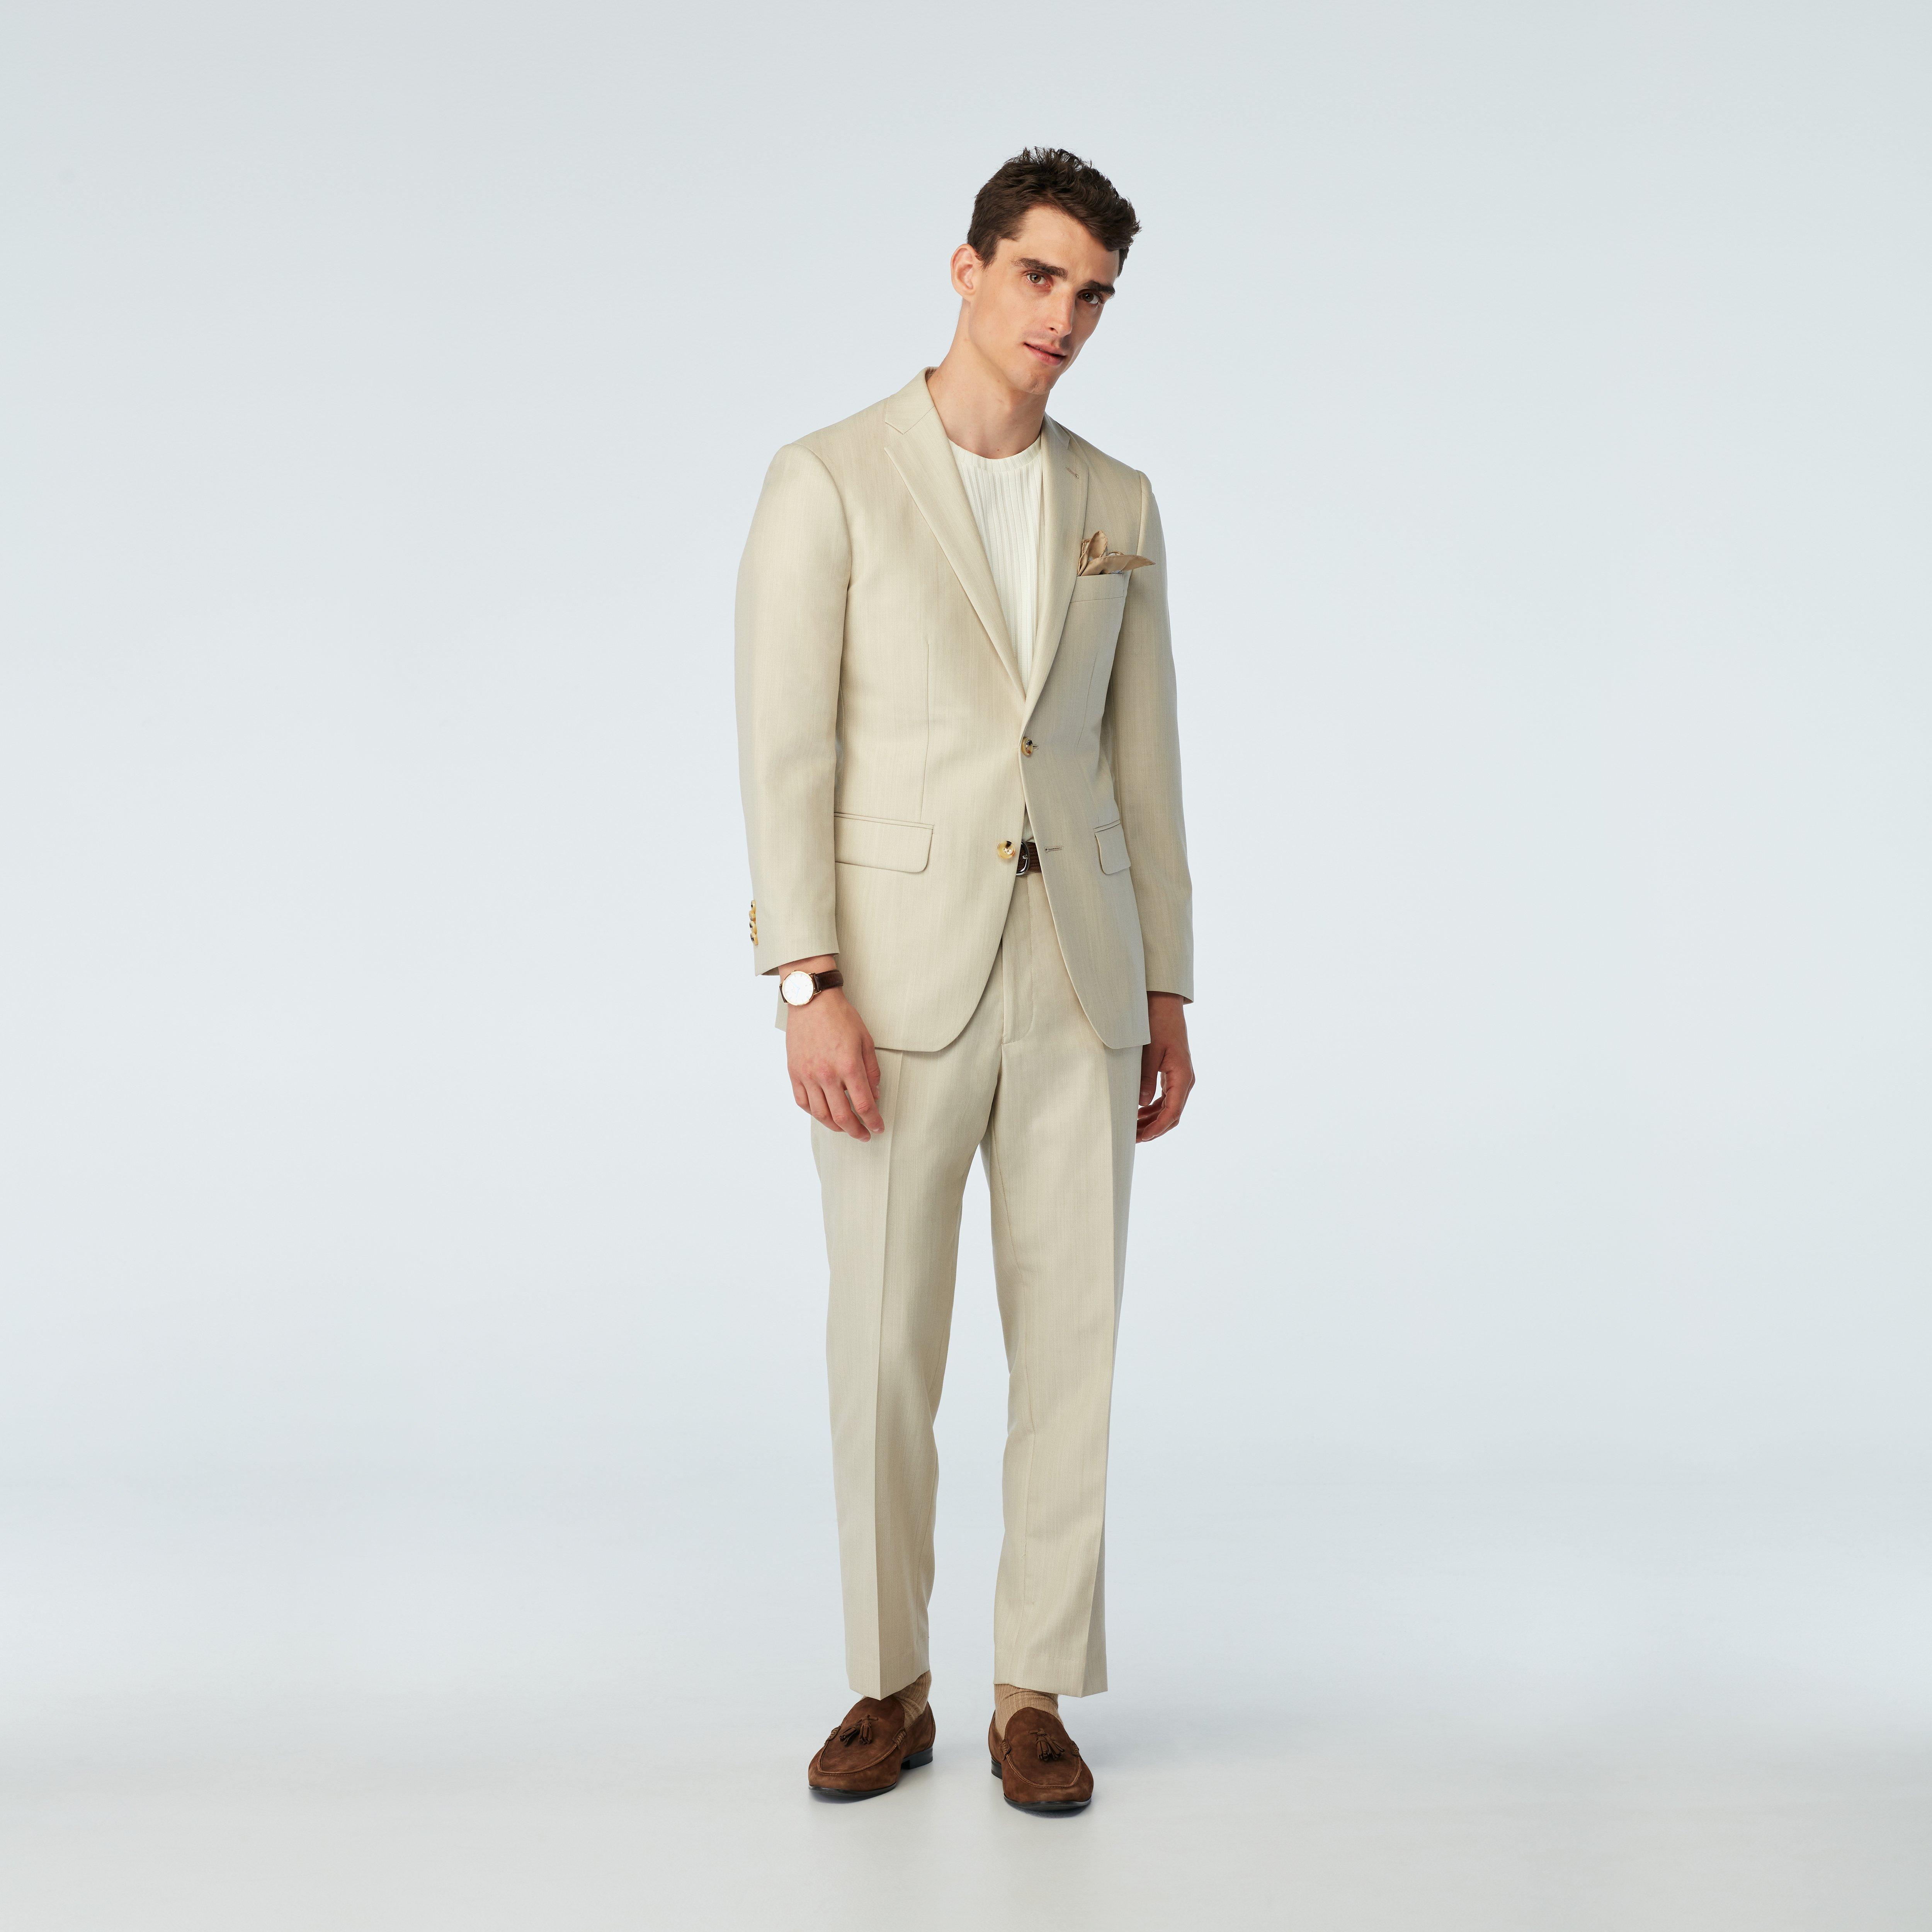 Men's Custom Suits - Modica Herringbone Cream Suit | INDOCHINO